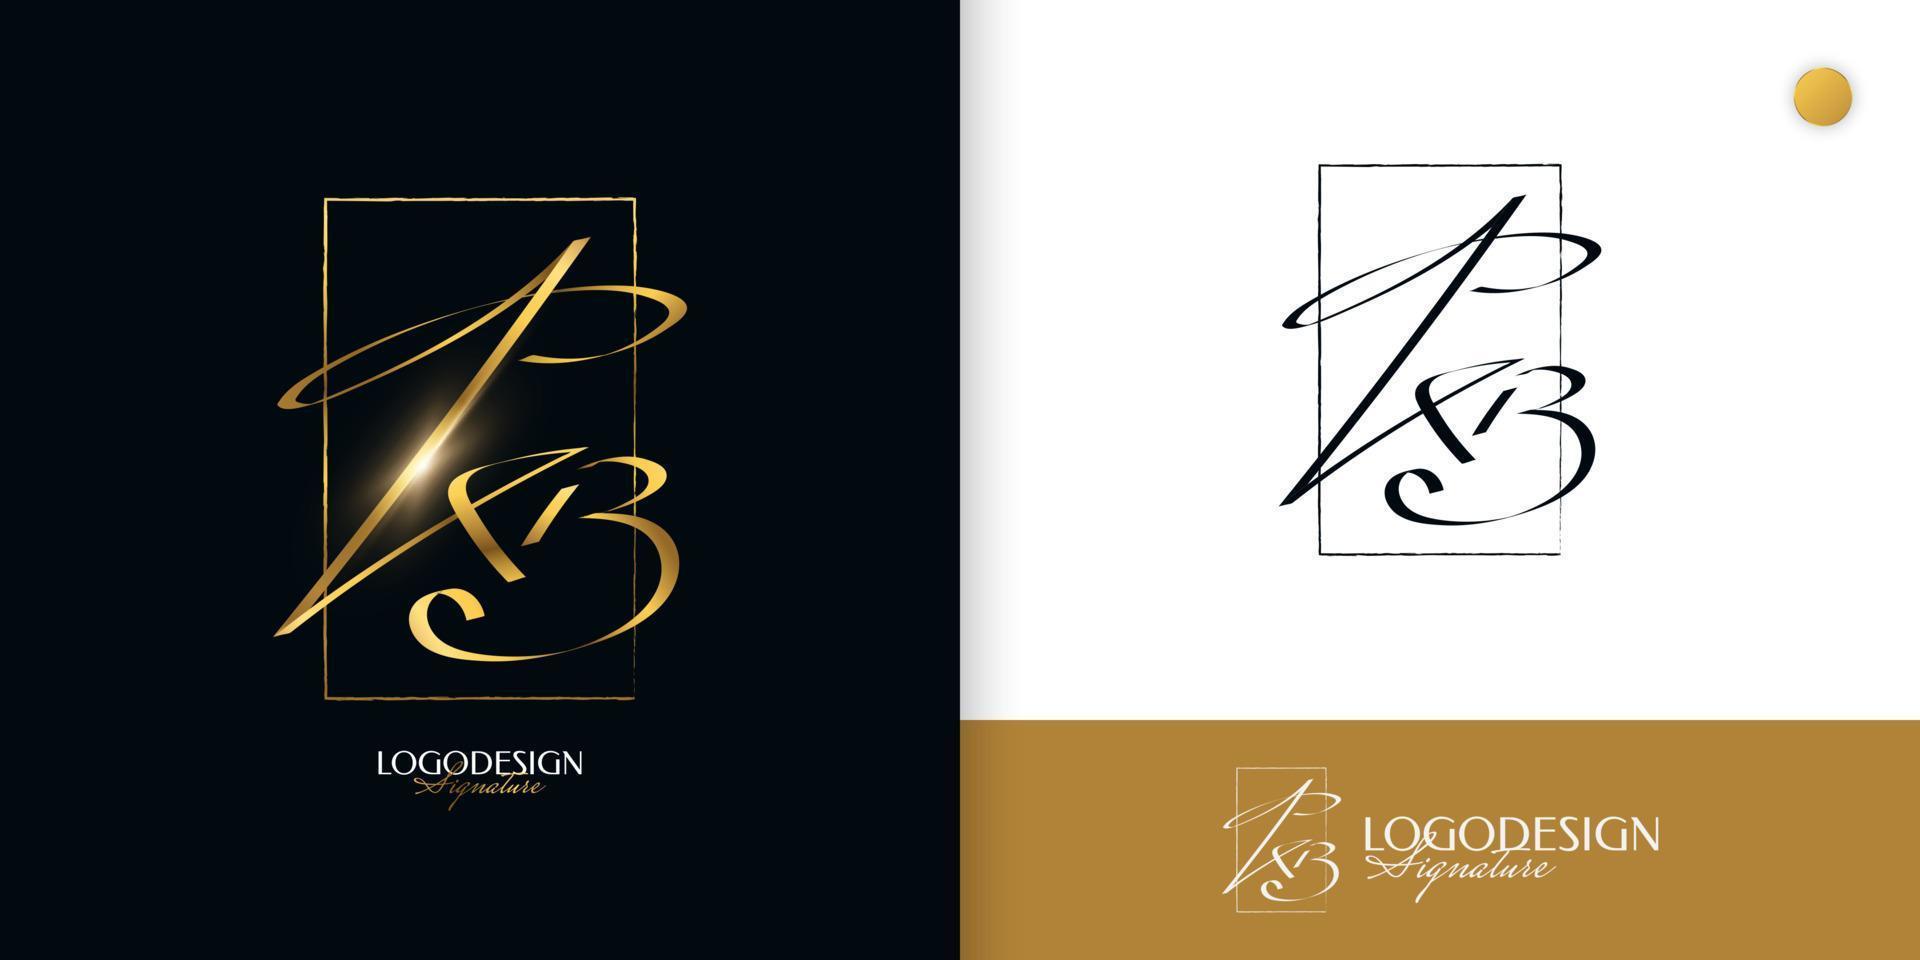 kb design de logotipo de assinatura inicial com estilo de caligrafia dourada elegante e minimalista. design de logotipo inicial k e b para identidade de marca de casamento, moda, joias, boutique e negócios vetor